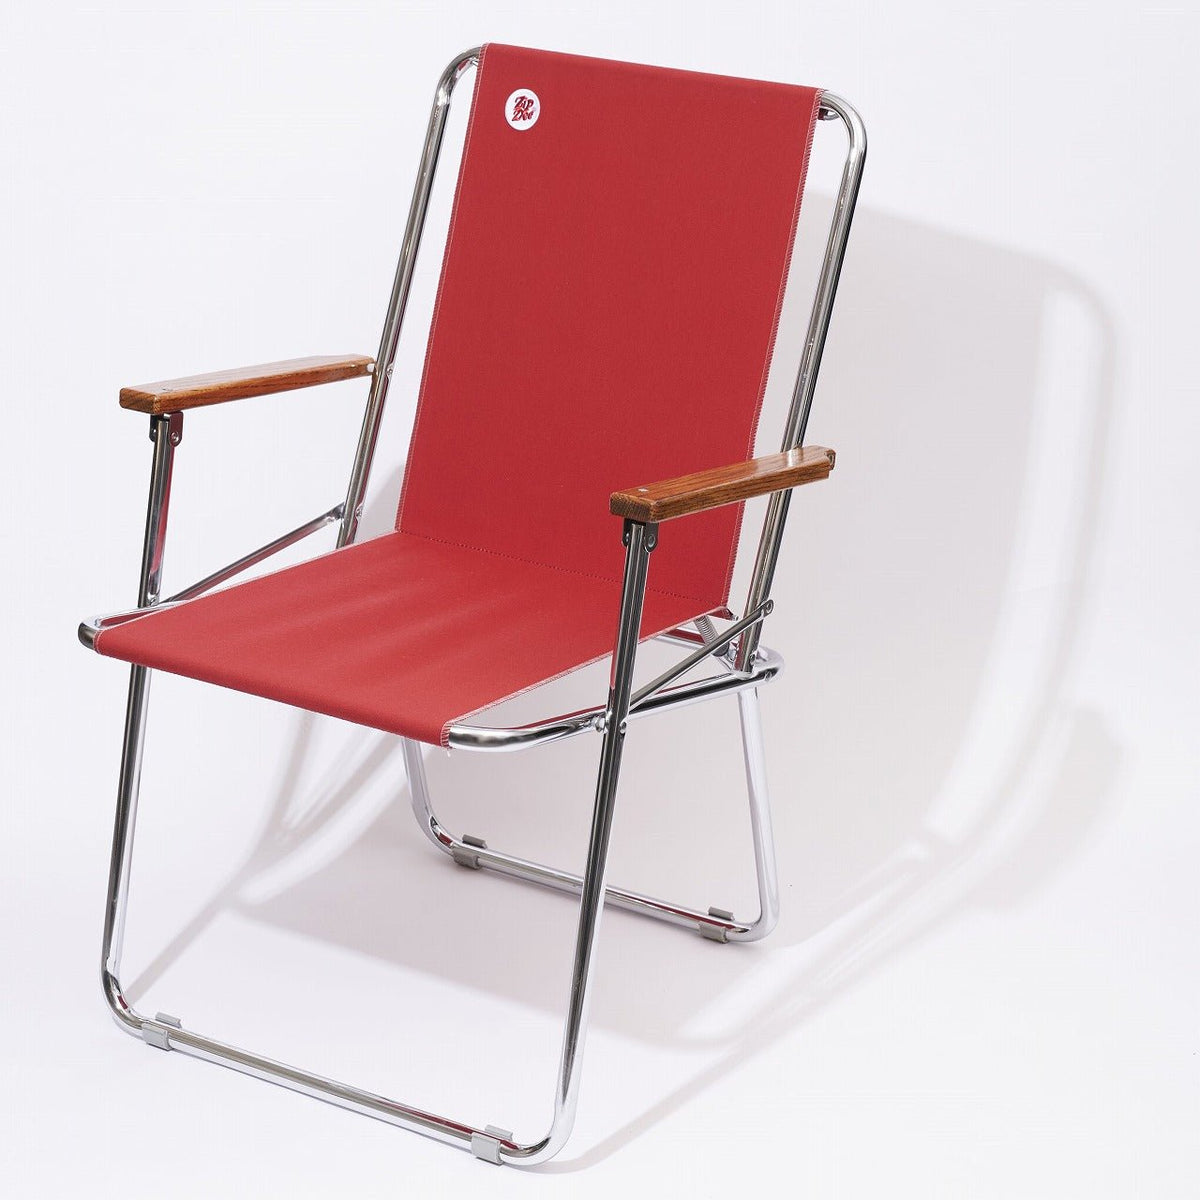 ZipDee CHAIR col. 4603 [Jockey Red] – ZipDee Awning & Chair / Solo ...